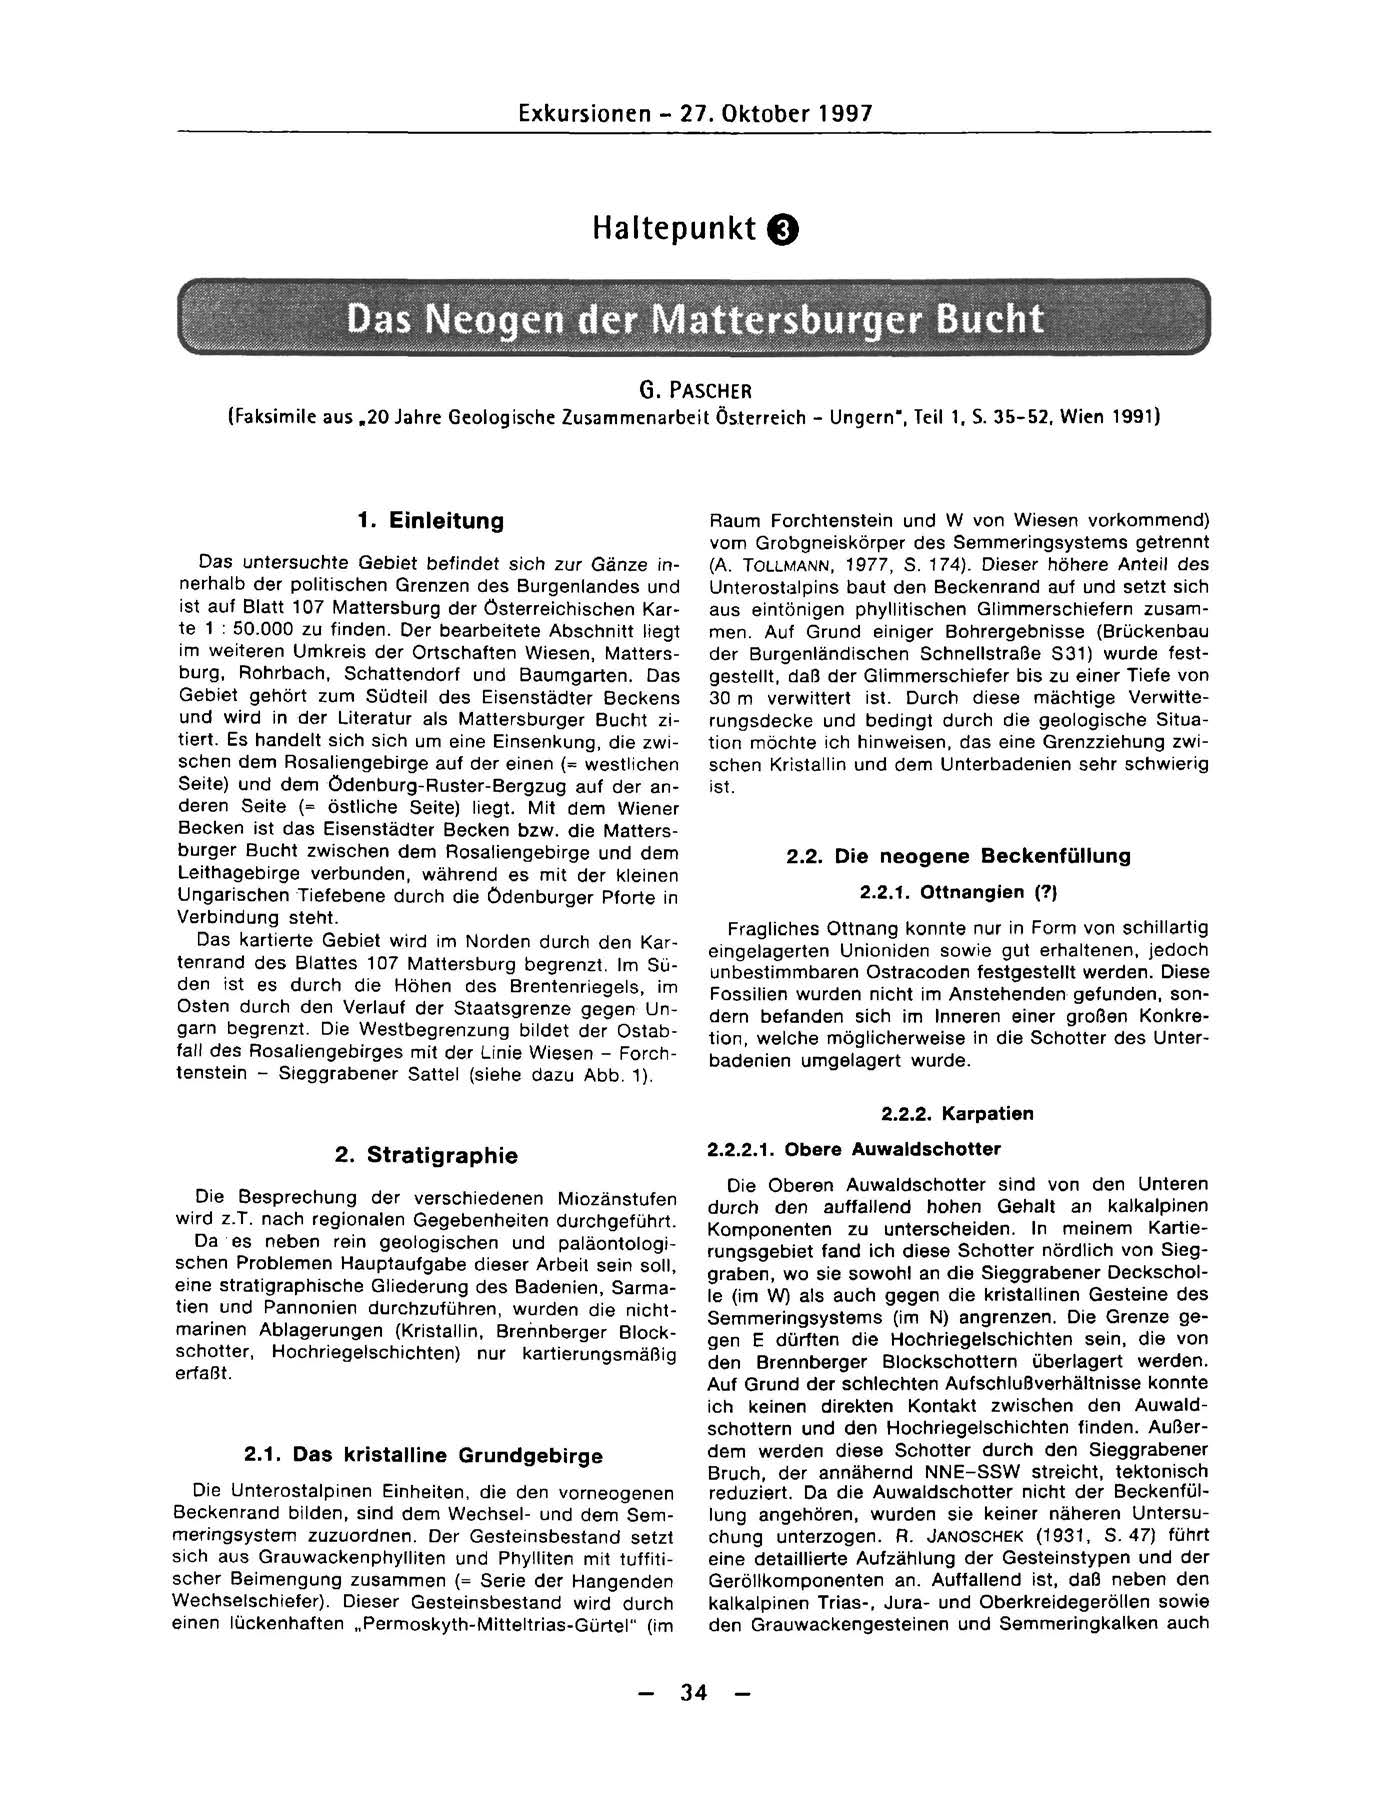 Exkursionen - 27. Oktober 1997 Haltepunkt O Das Neogen der Mattersburger Bucht G. PASCHER (Faksimile aus.20 Jahre Geologische Zusammenarbeit Österreich - Ungern", Teil 1, S. 35-52, Wien 1991) 1.